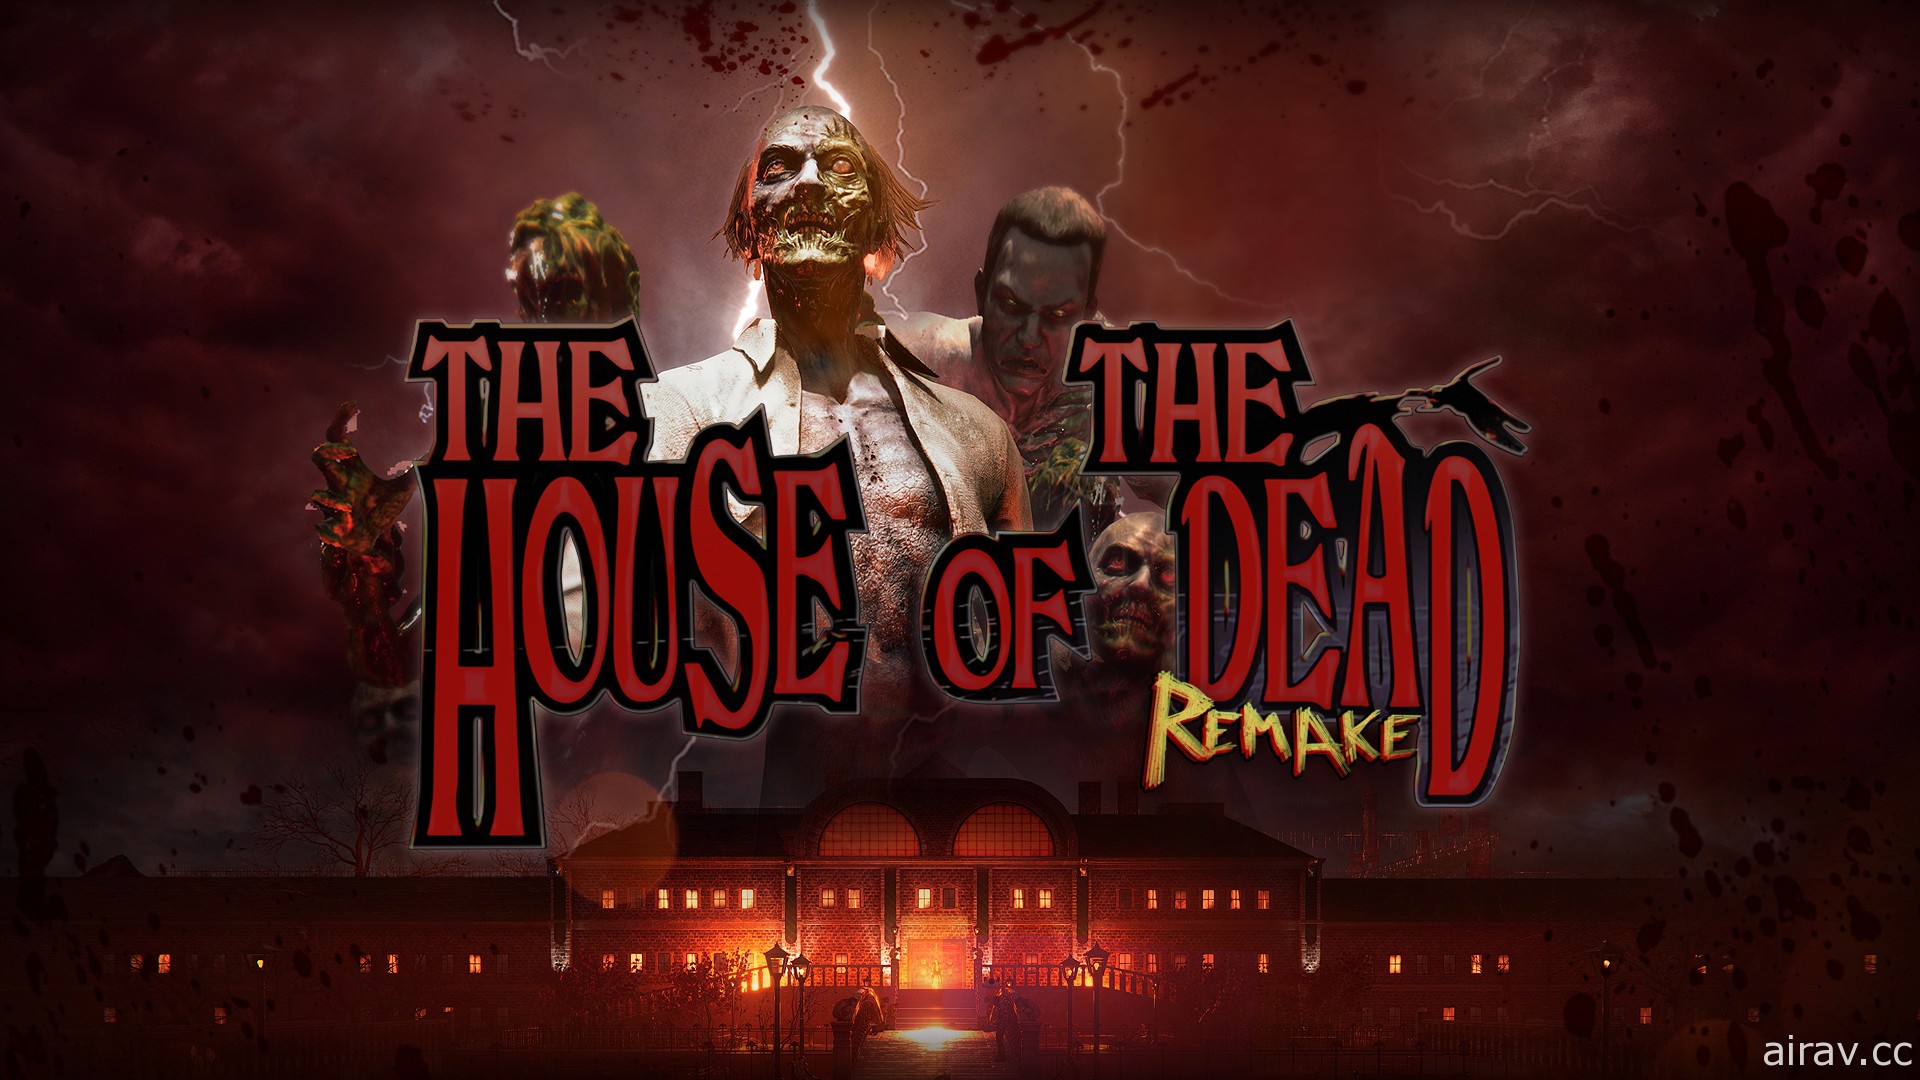 經典光線槍遊戲重製《死亡鬼屋 重製版》2021 年登場 以全新畫面與操控體驗原味玩法